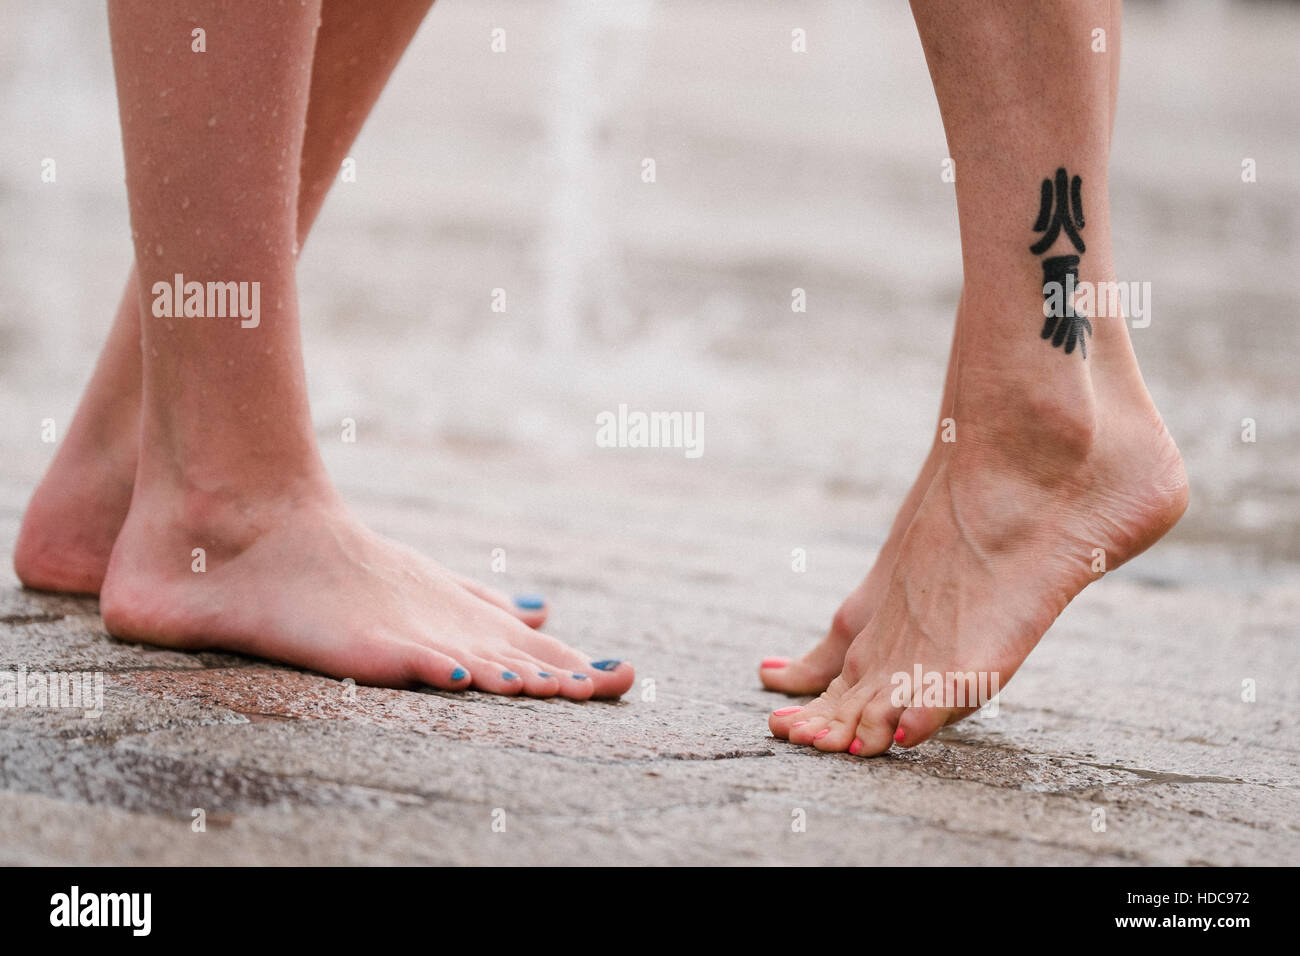 Image en couleur de deux les jambes des femmes et les pieds donnant l'impression qu'ils s'embrassent ou serrant les uns les autres. Banque D'Images